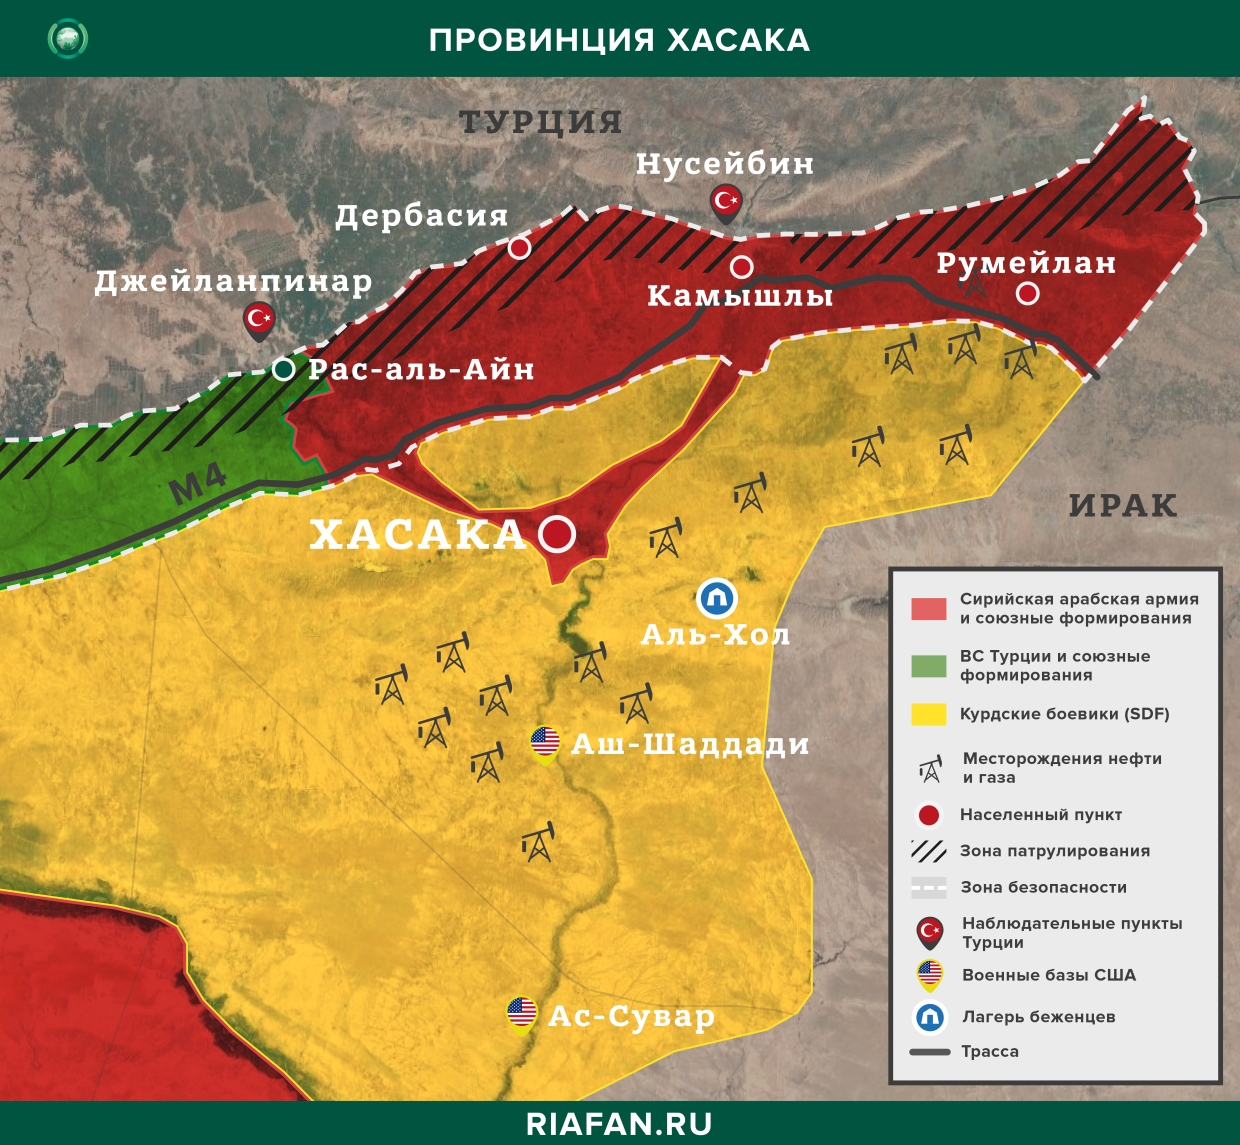 叙利亚每日结果 21 七月 06.00: 库尔德武装分子袭击代尔祖尔, 在阿勒颇中和 3 是恐怖分子